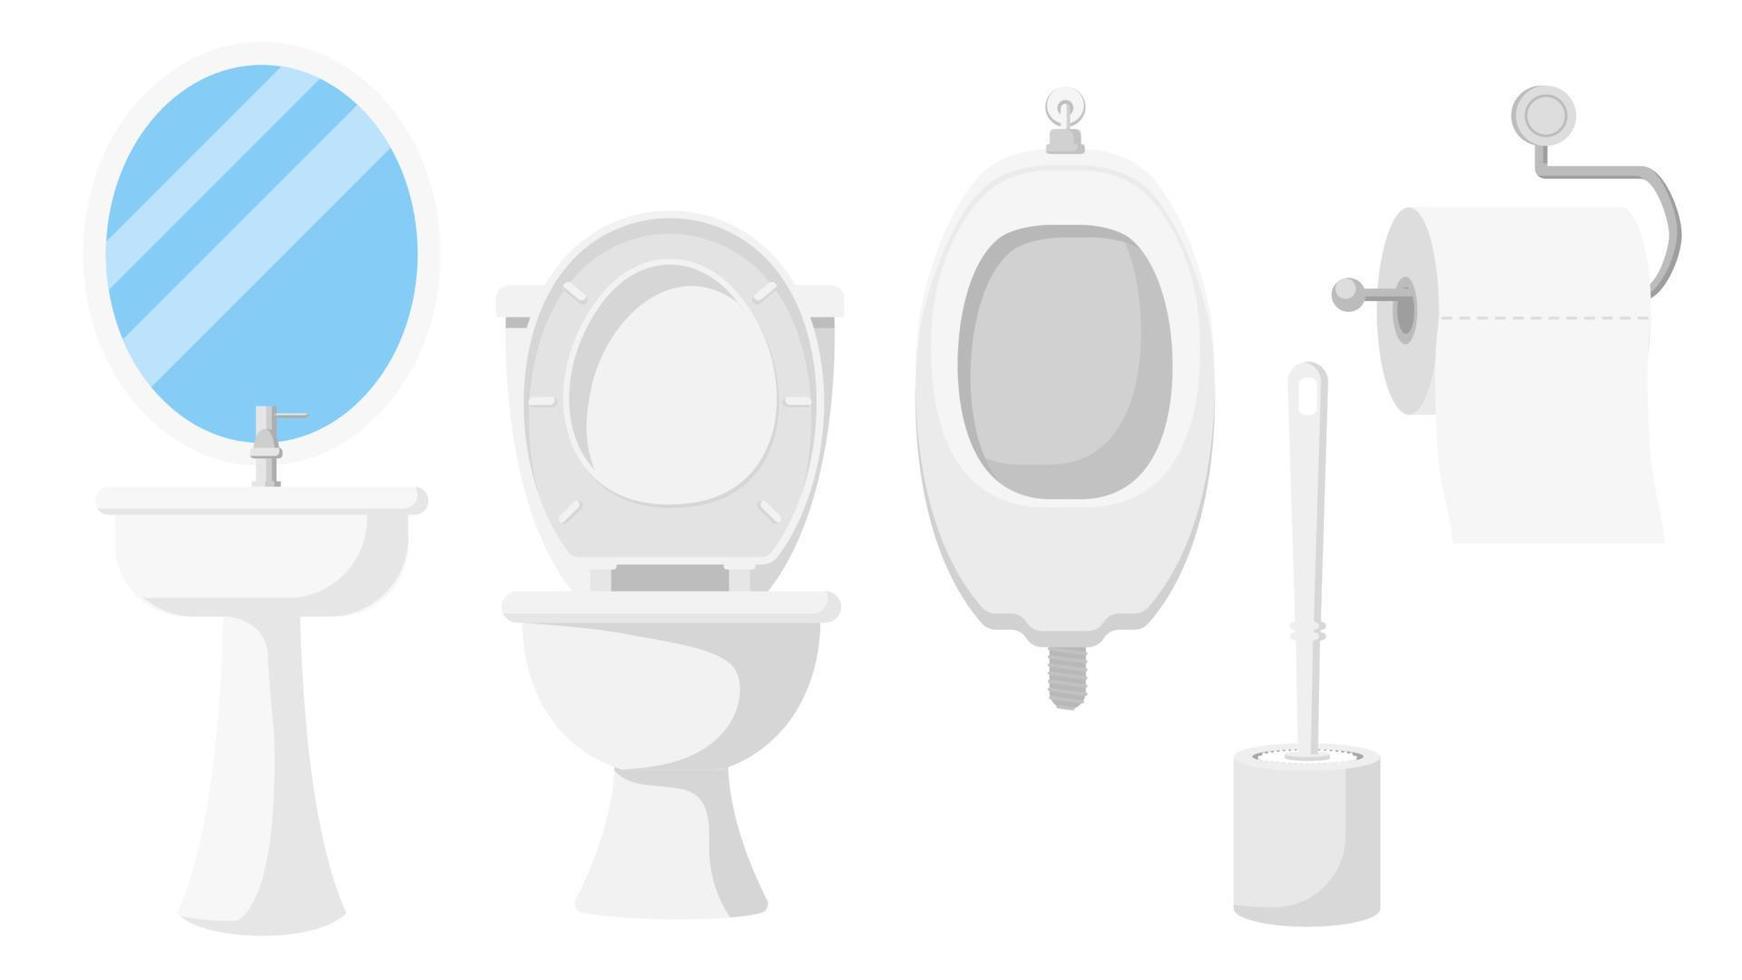 Sammlungssatz von Toilettenobjekt Spiegelgeweberolle Toilettenbürste Beckenständer Schüssel Urinal vektor